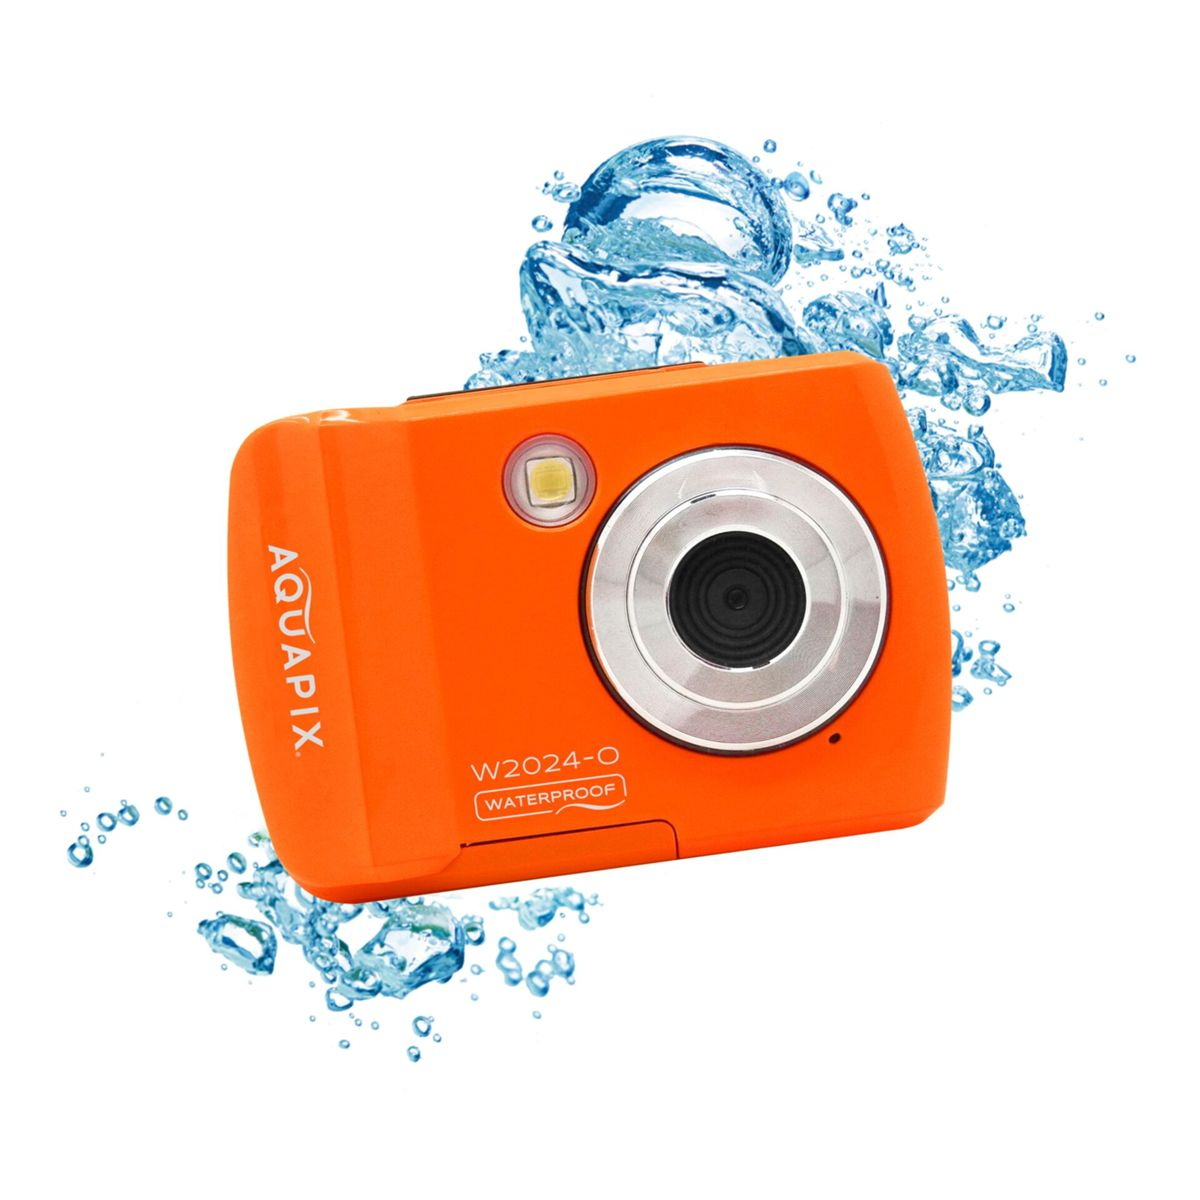 EASYPIX Aquapix Unterwasserkamera Splash orange W2024 Orange